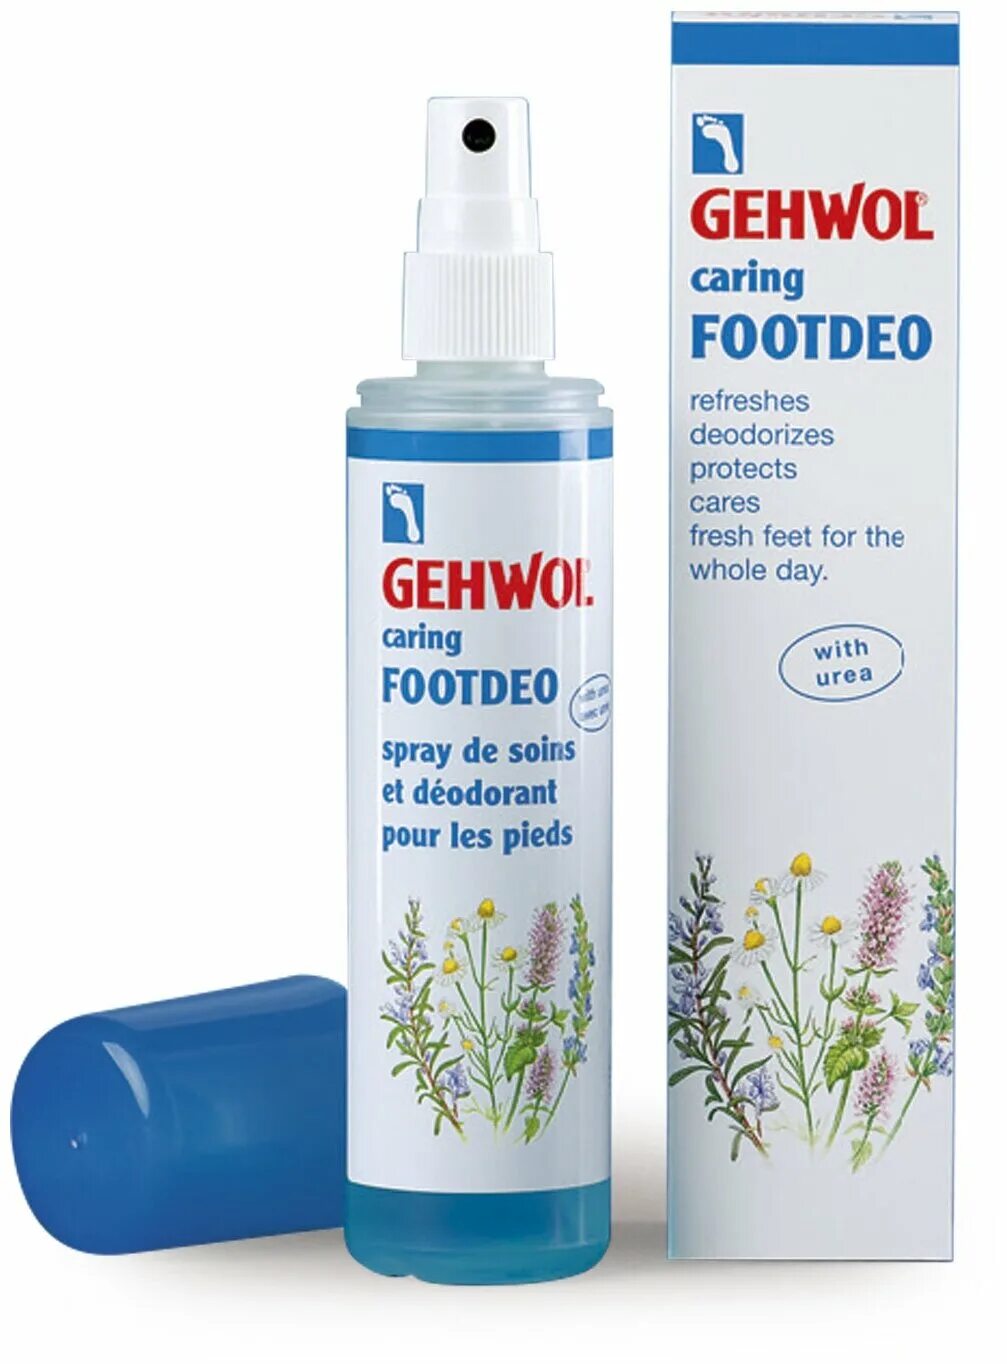 Купить gehwol для ног. Gehwol дезодорант для ног sensitive. Gehwol дезодорант для ног 150 мл. Gehwol спрей-дезодорант для ног Footdeo carring. Ухаживающий дезодорант для ног Gehwol caring Footdeo 150 мл.